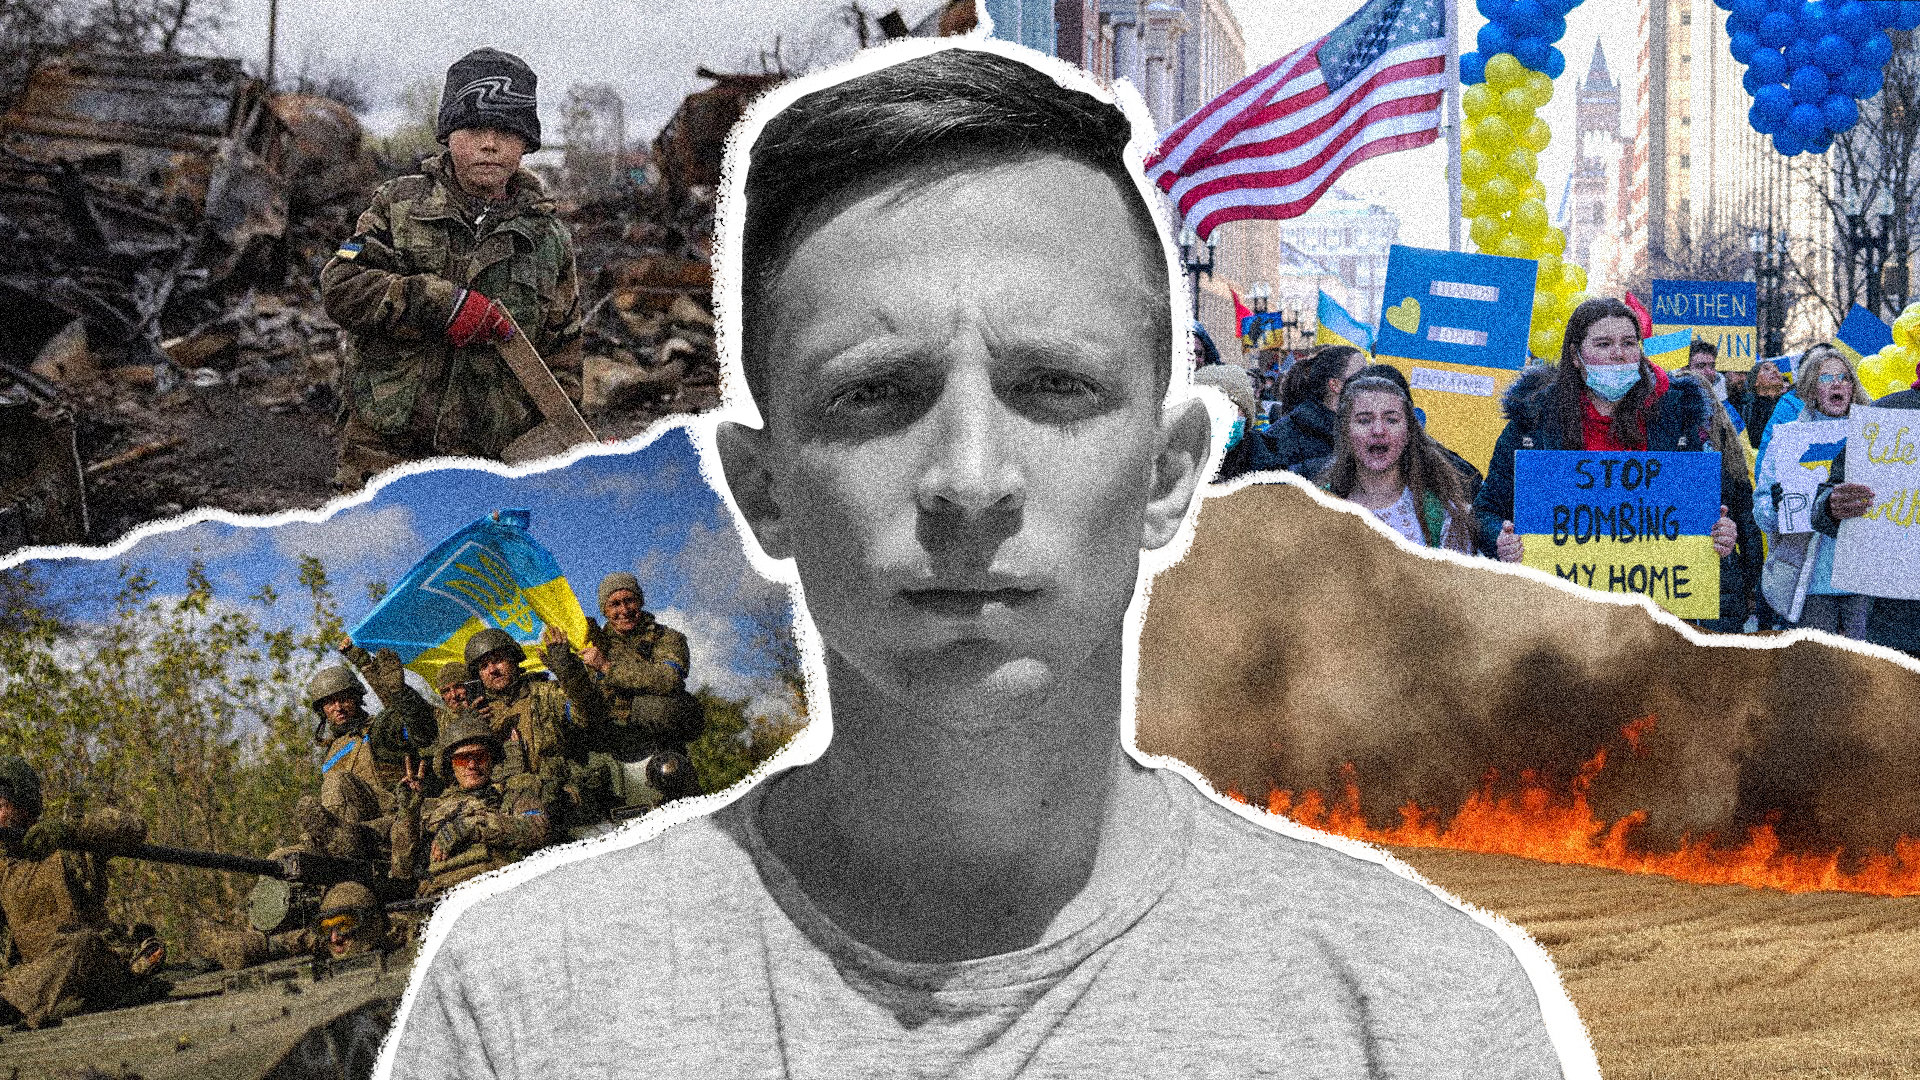 “Те, що зробили українці у 2022 році, було безпрецедентне”. Інтерв’ю із репортером Павелом Пеньонжеком